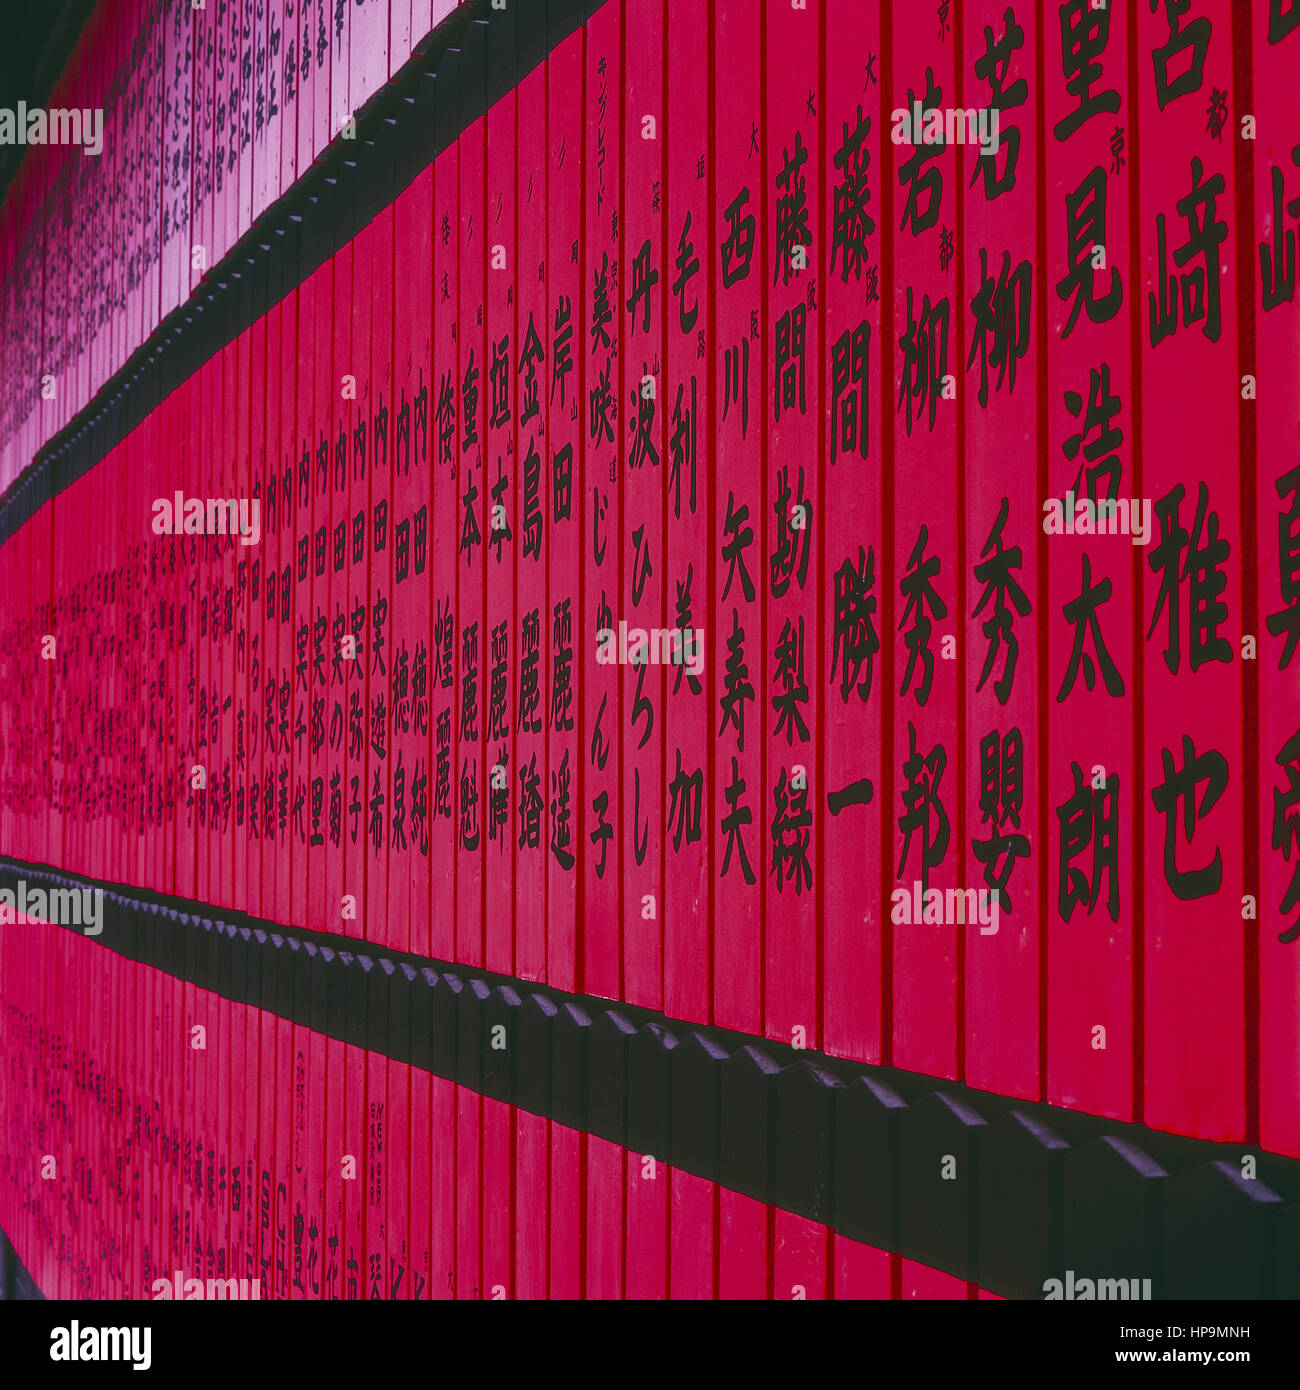 Japanische Schriftzeichen auf roten Holzbrettern Stock Photo